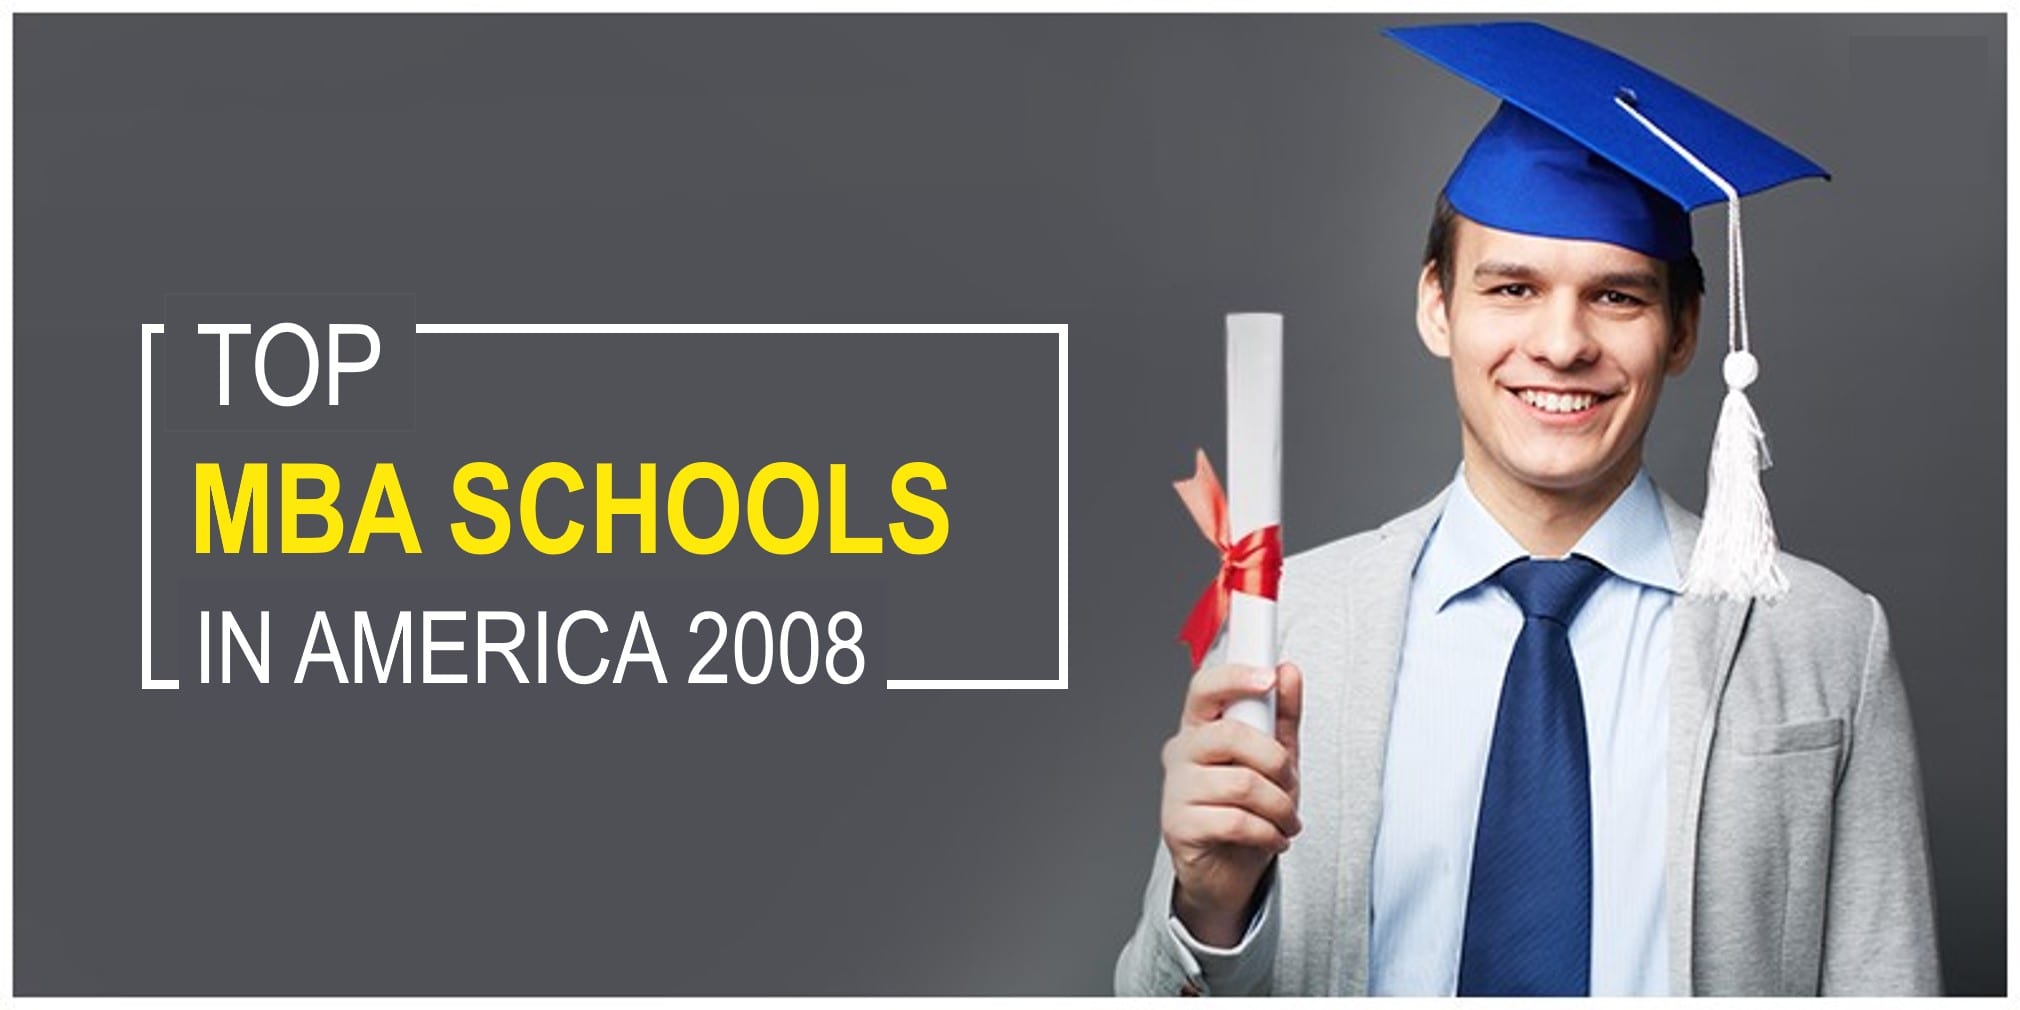 Top Ten MBA Schools in America